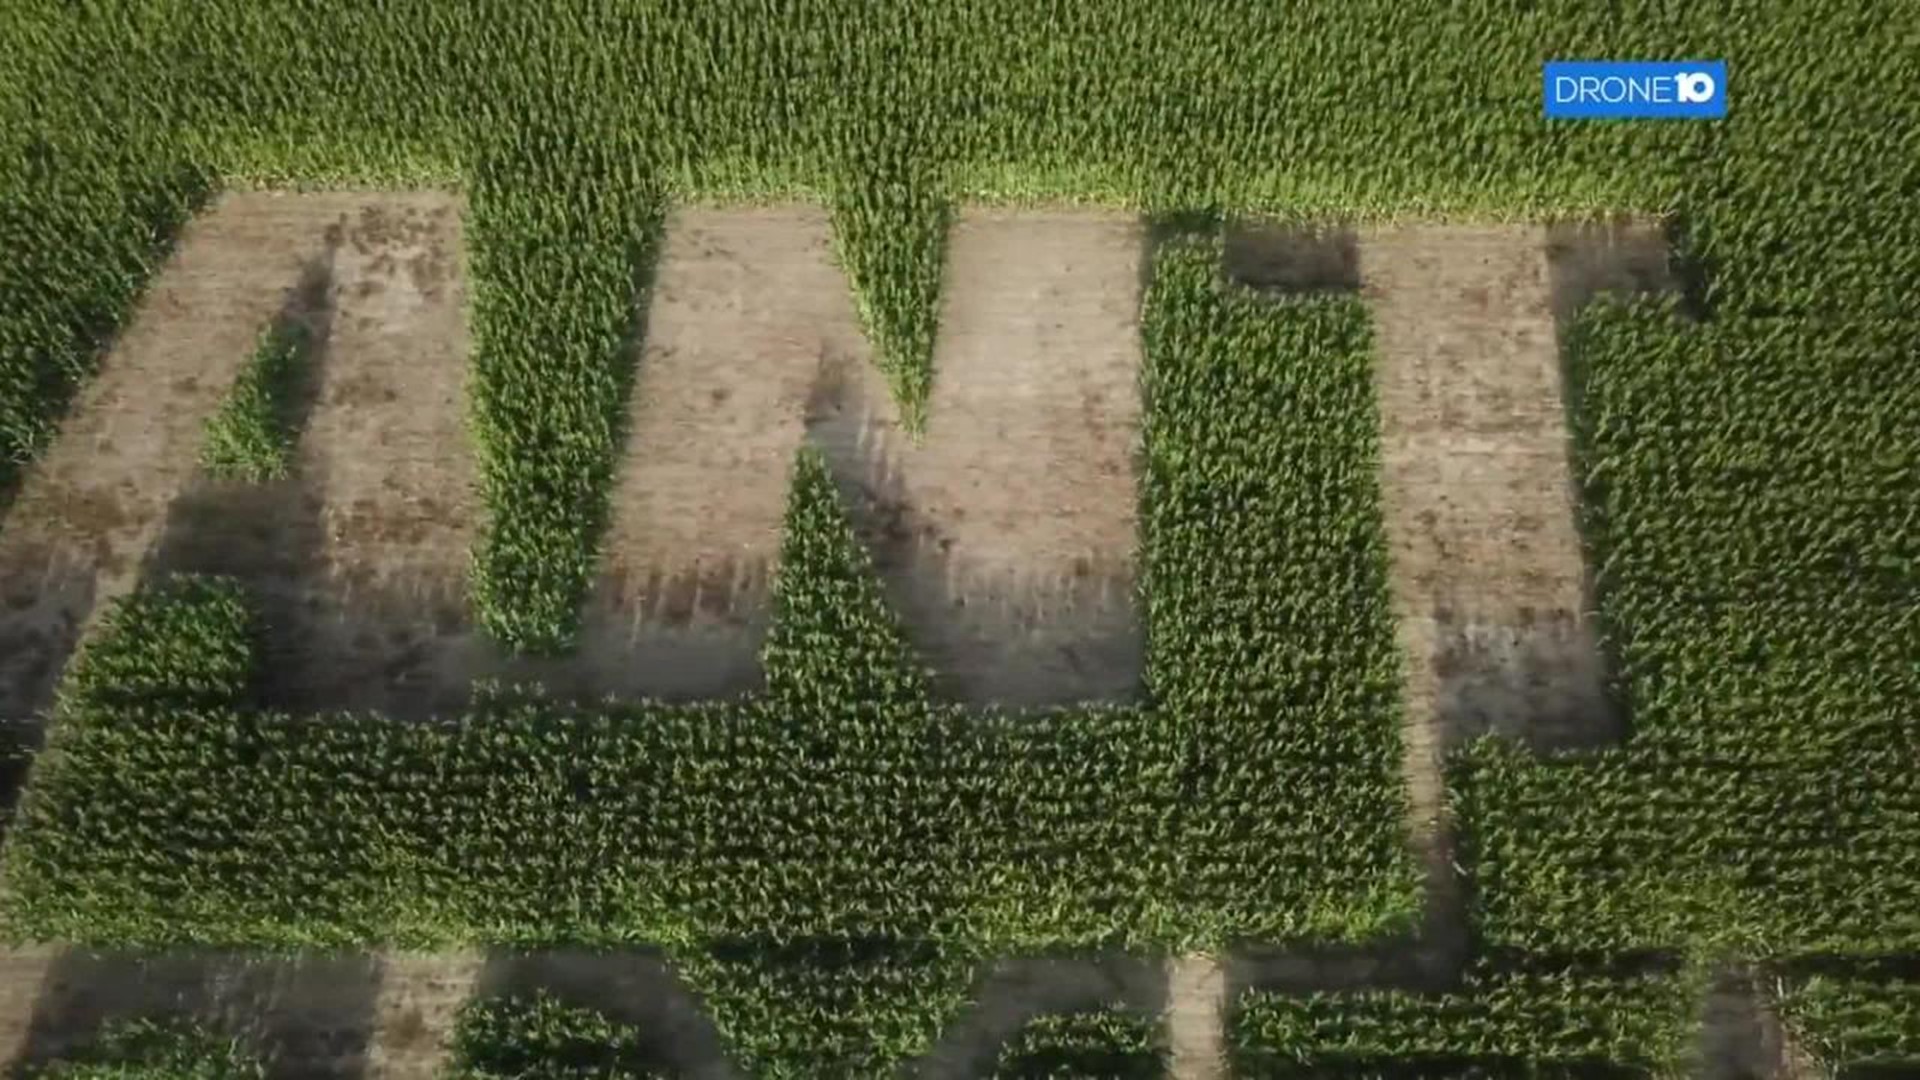 Drone 10: Corn maze in Union County